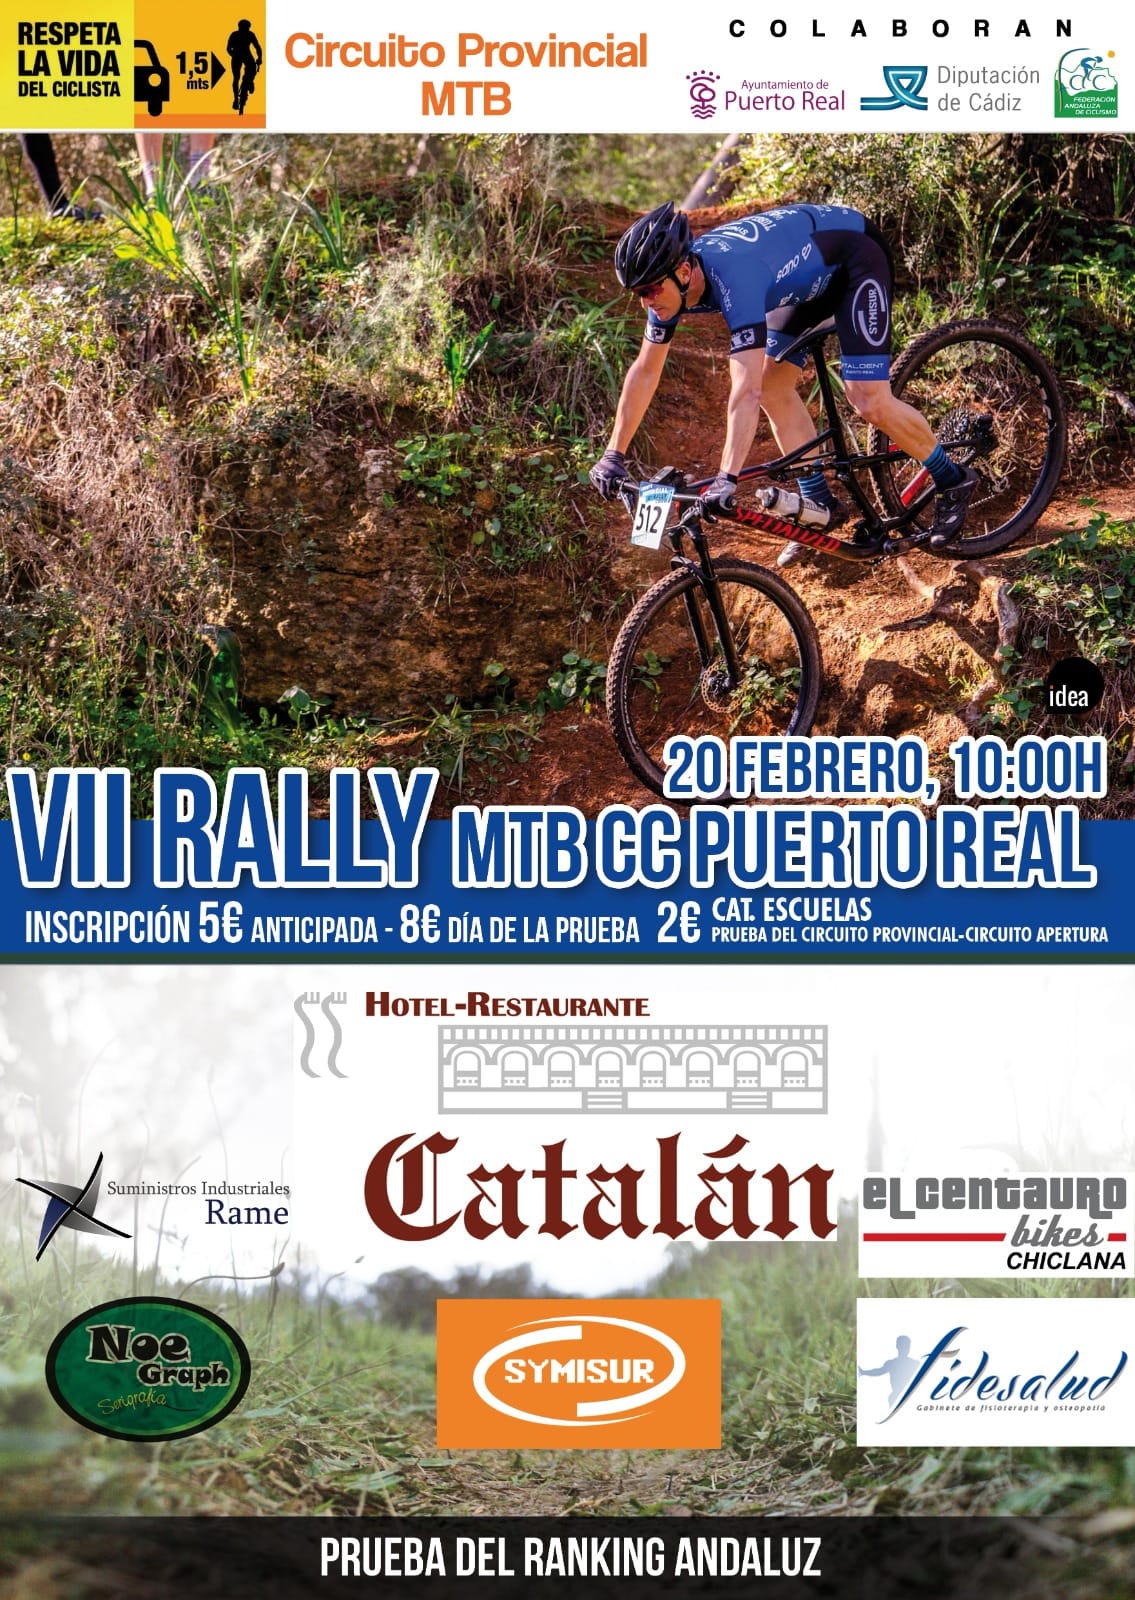 El VII Rally CC Puerto Real espera a los bikers